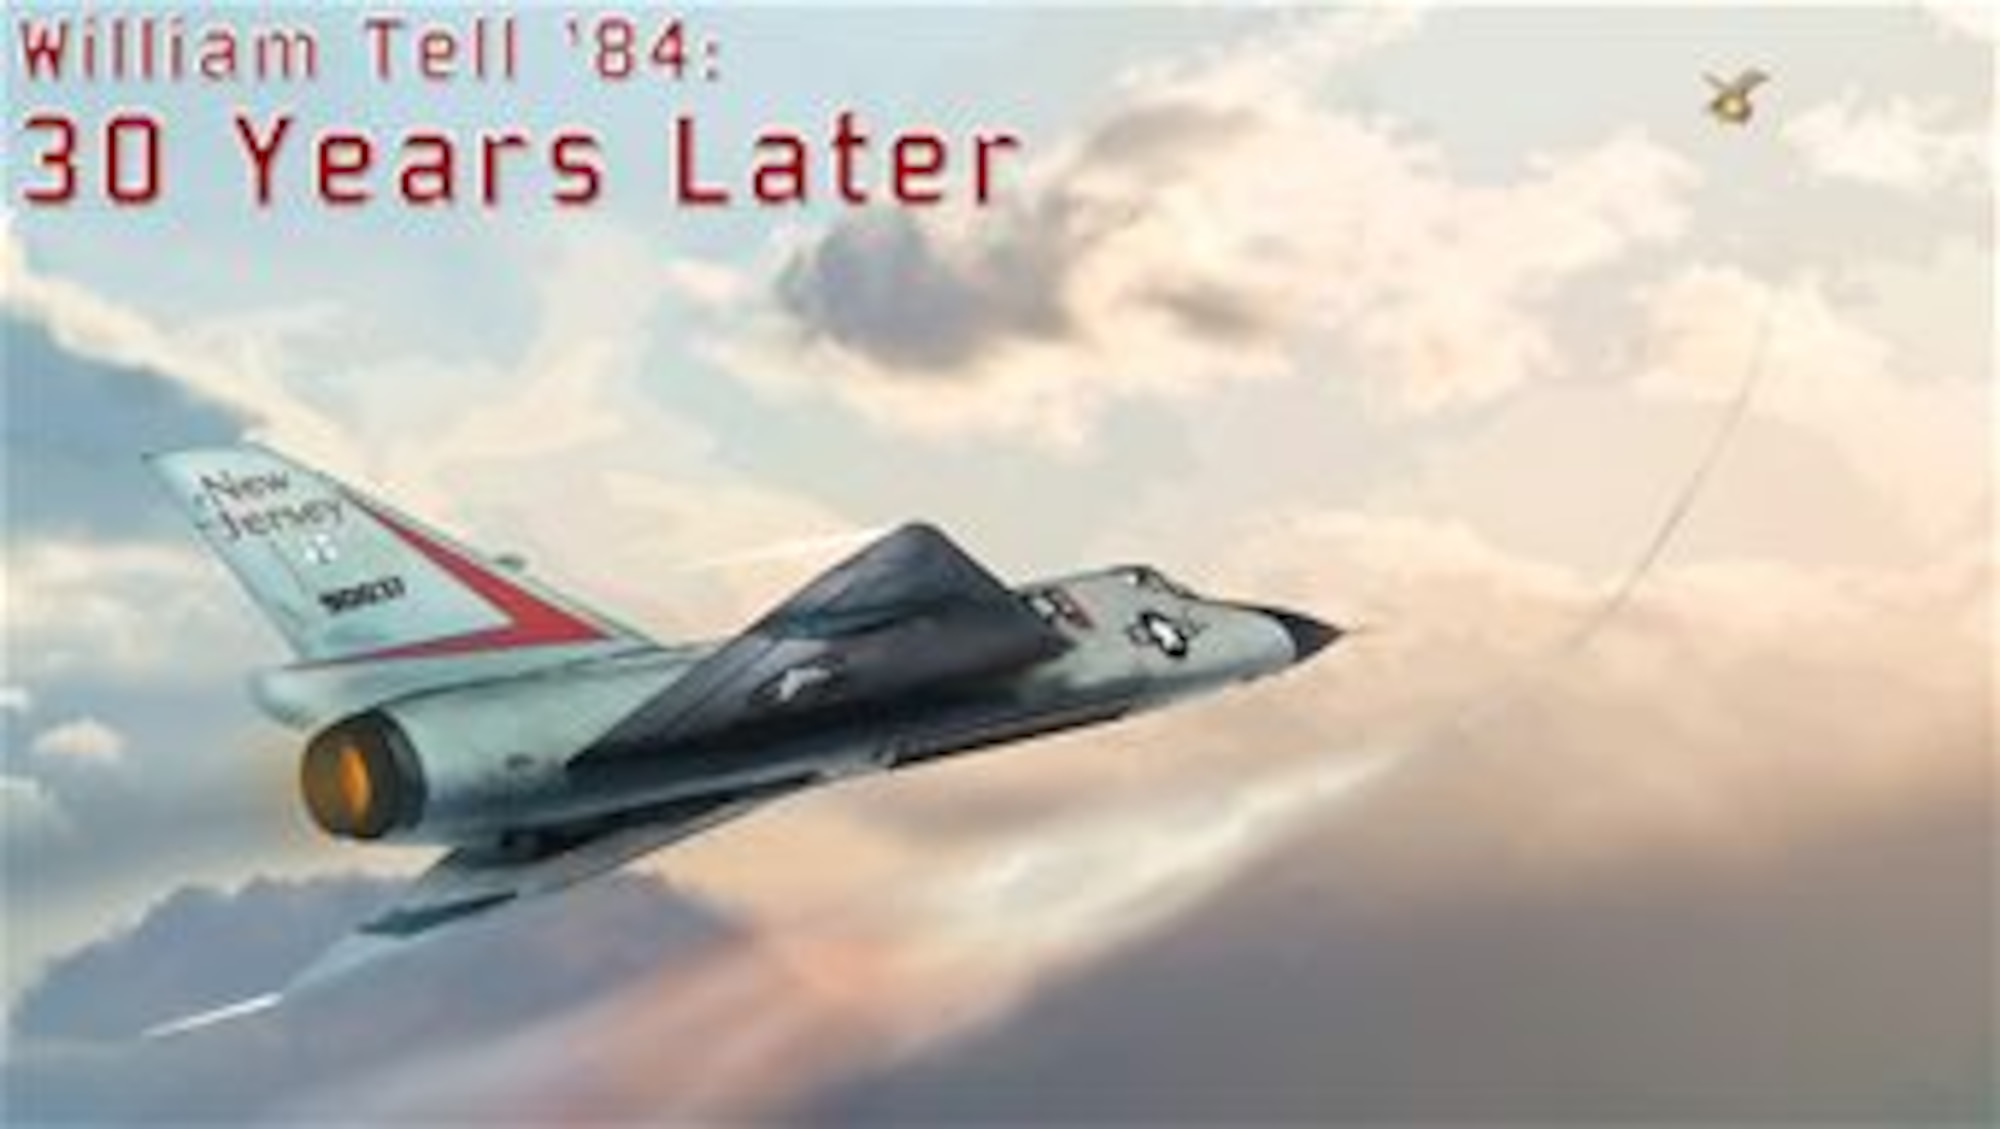 William Tell '84: 30 Years Later. (U.S. Air National Guard digital art by Tech. Sgt. Matt Hecht)